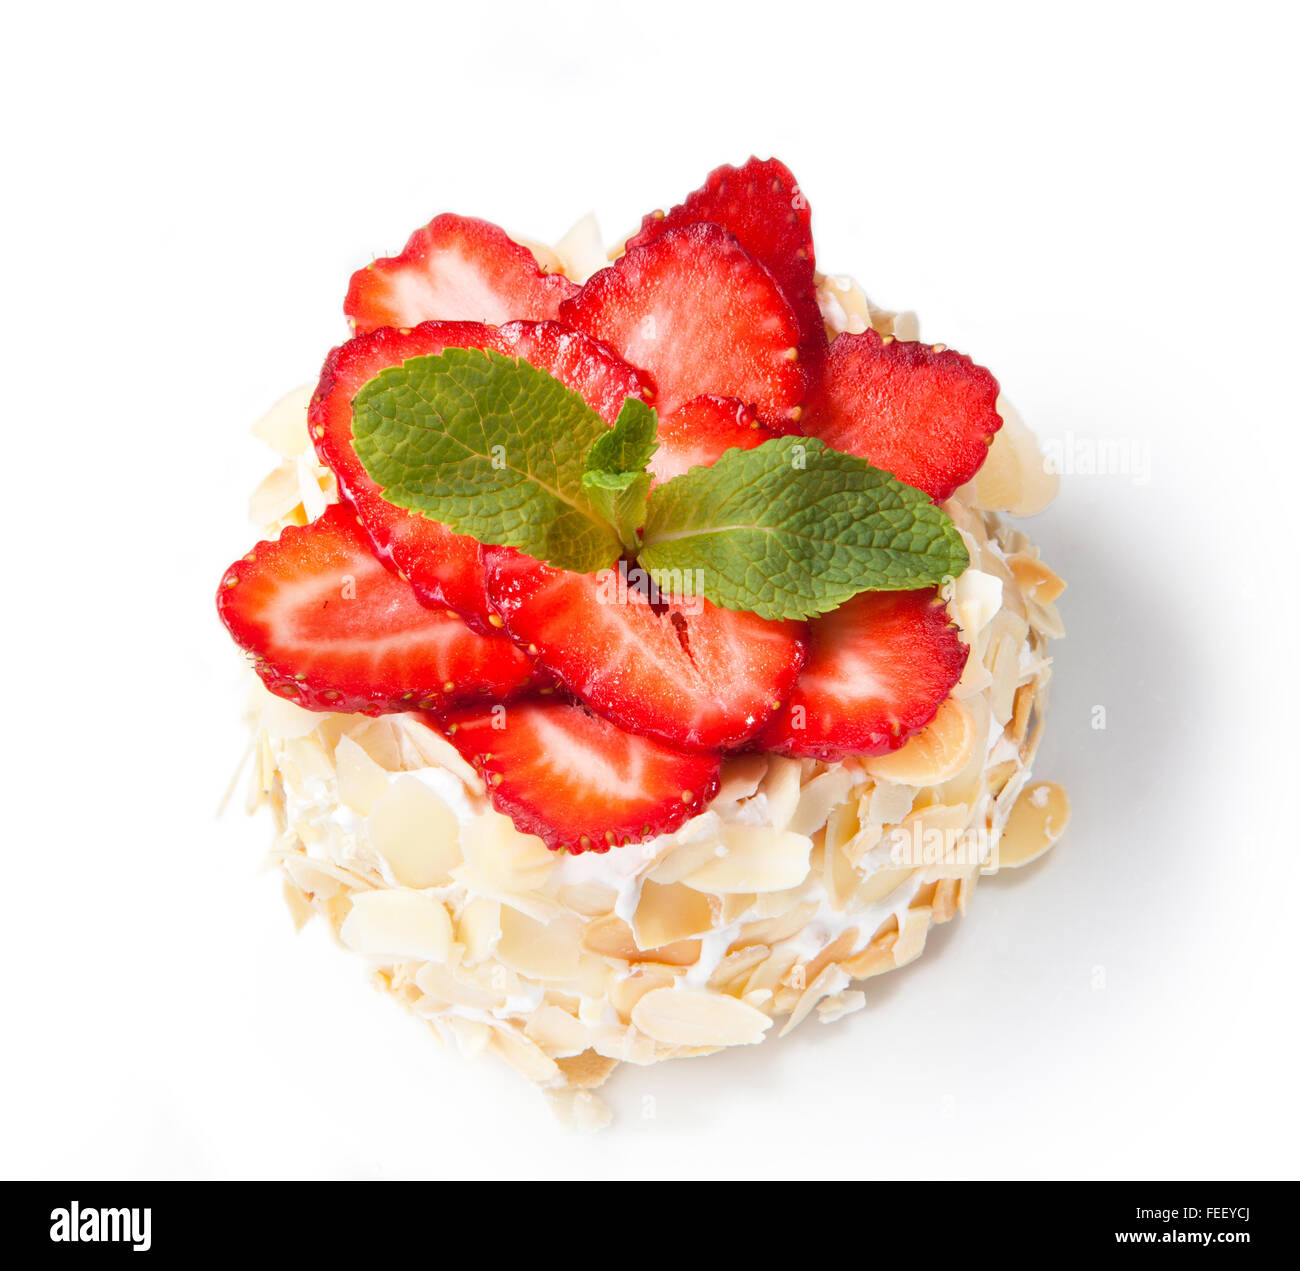 Erdbeer-Käsekuchen mit Mandeln und frischen Beeren isoliert auf weißem Hintergrund. Stockfoto